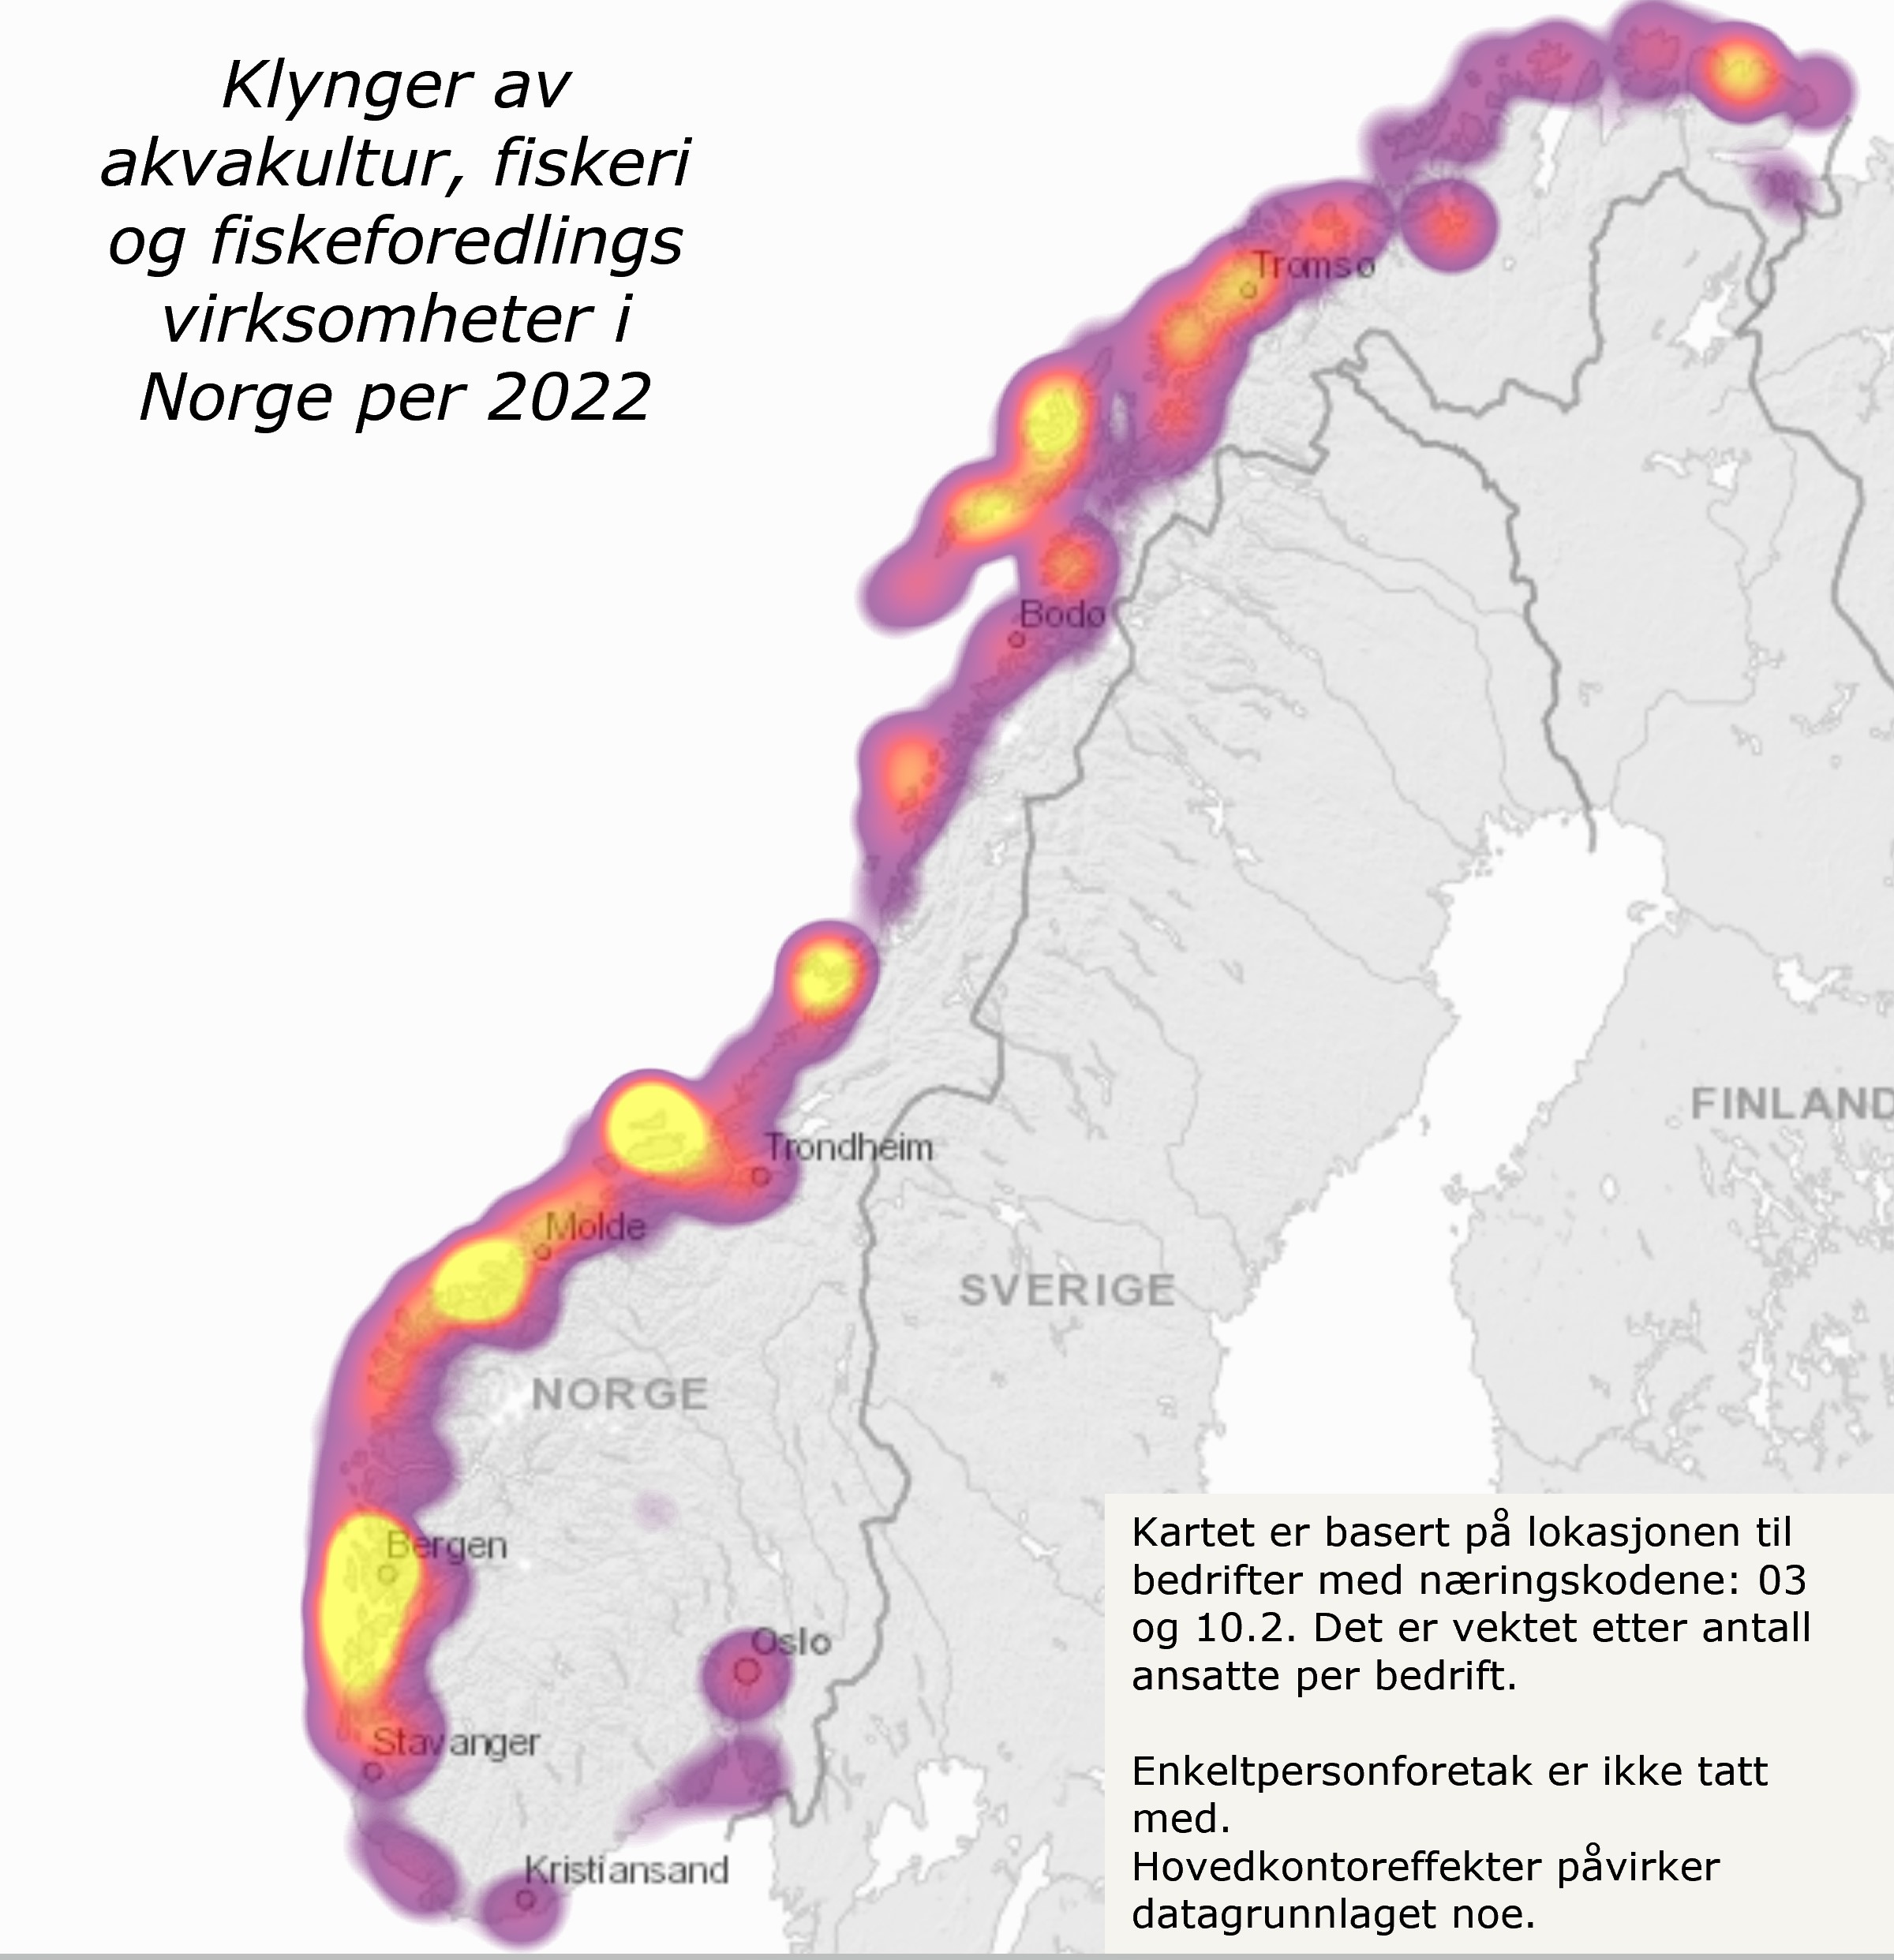 Klynger av akvakultur, fiskeri og fiskeforedlings virksomheter i Norge i 2022